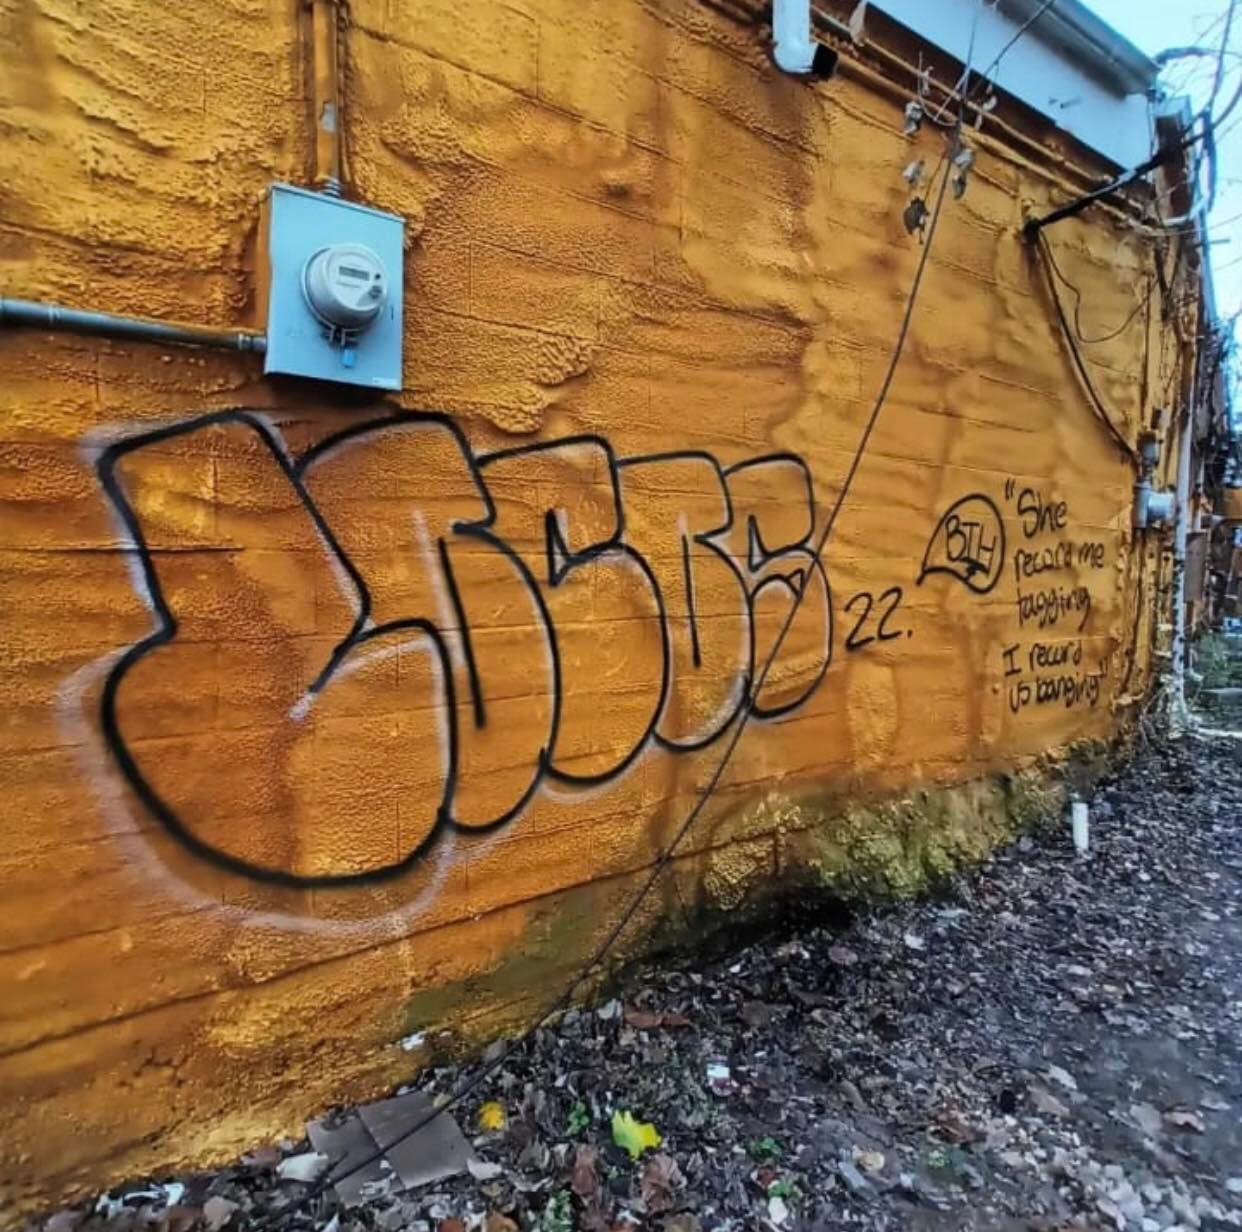 Graffiti on wall by locos